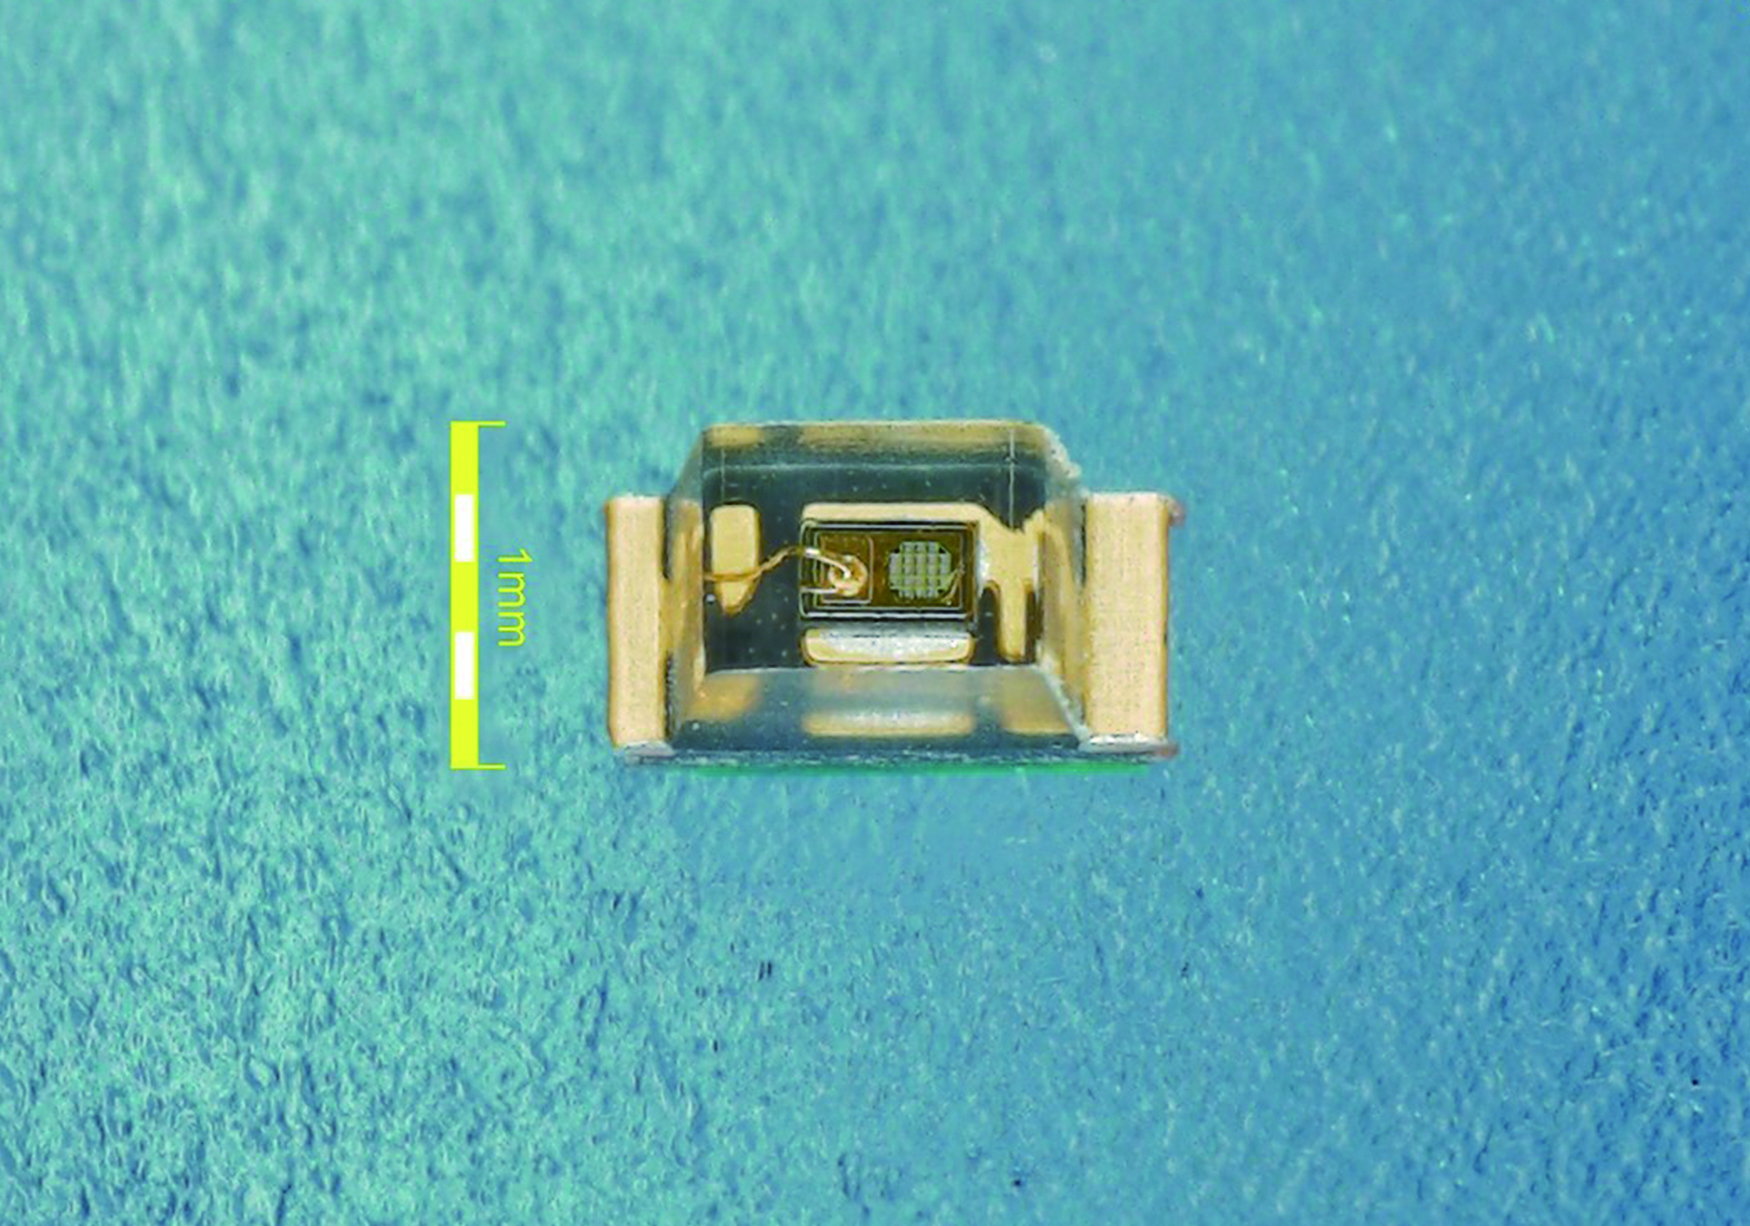 Width 1.6 mm, length 0.8 mm, height 0.7 mm (JIS standard 1608M)